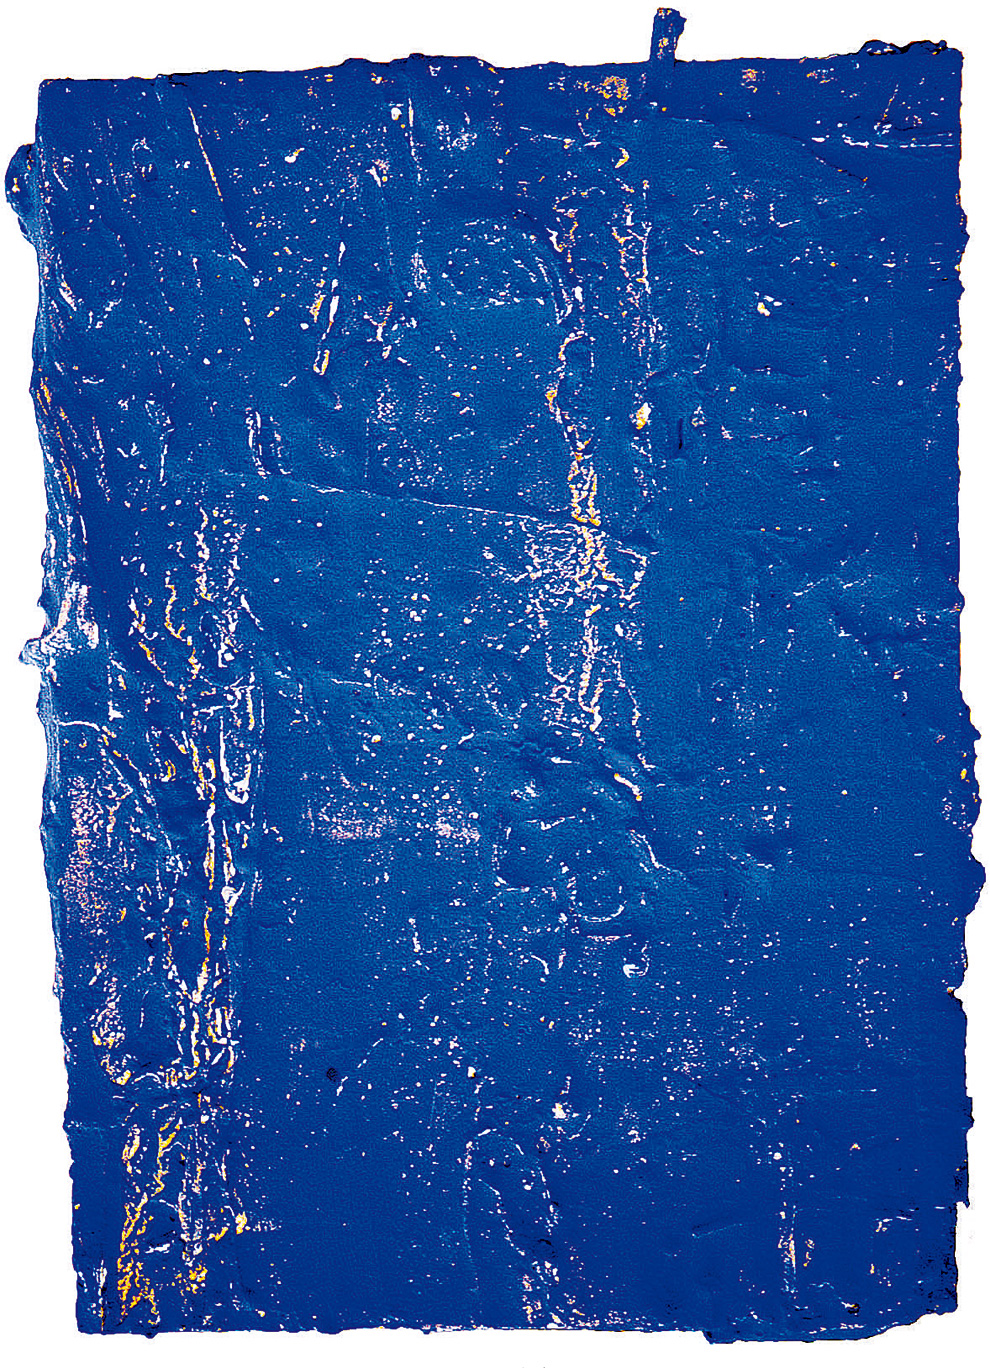 《古裂—蓝》--54.4x40x5.6cm--木质构造、麻纸、矿物·植物·土质颜料、箔--2002年.jpg